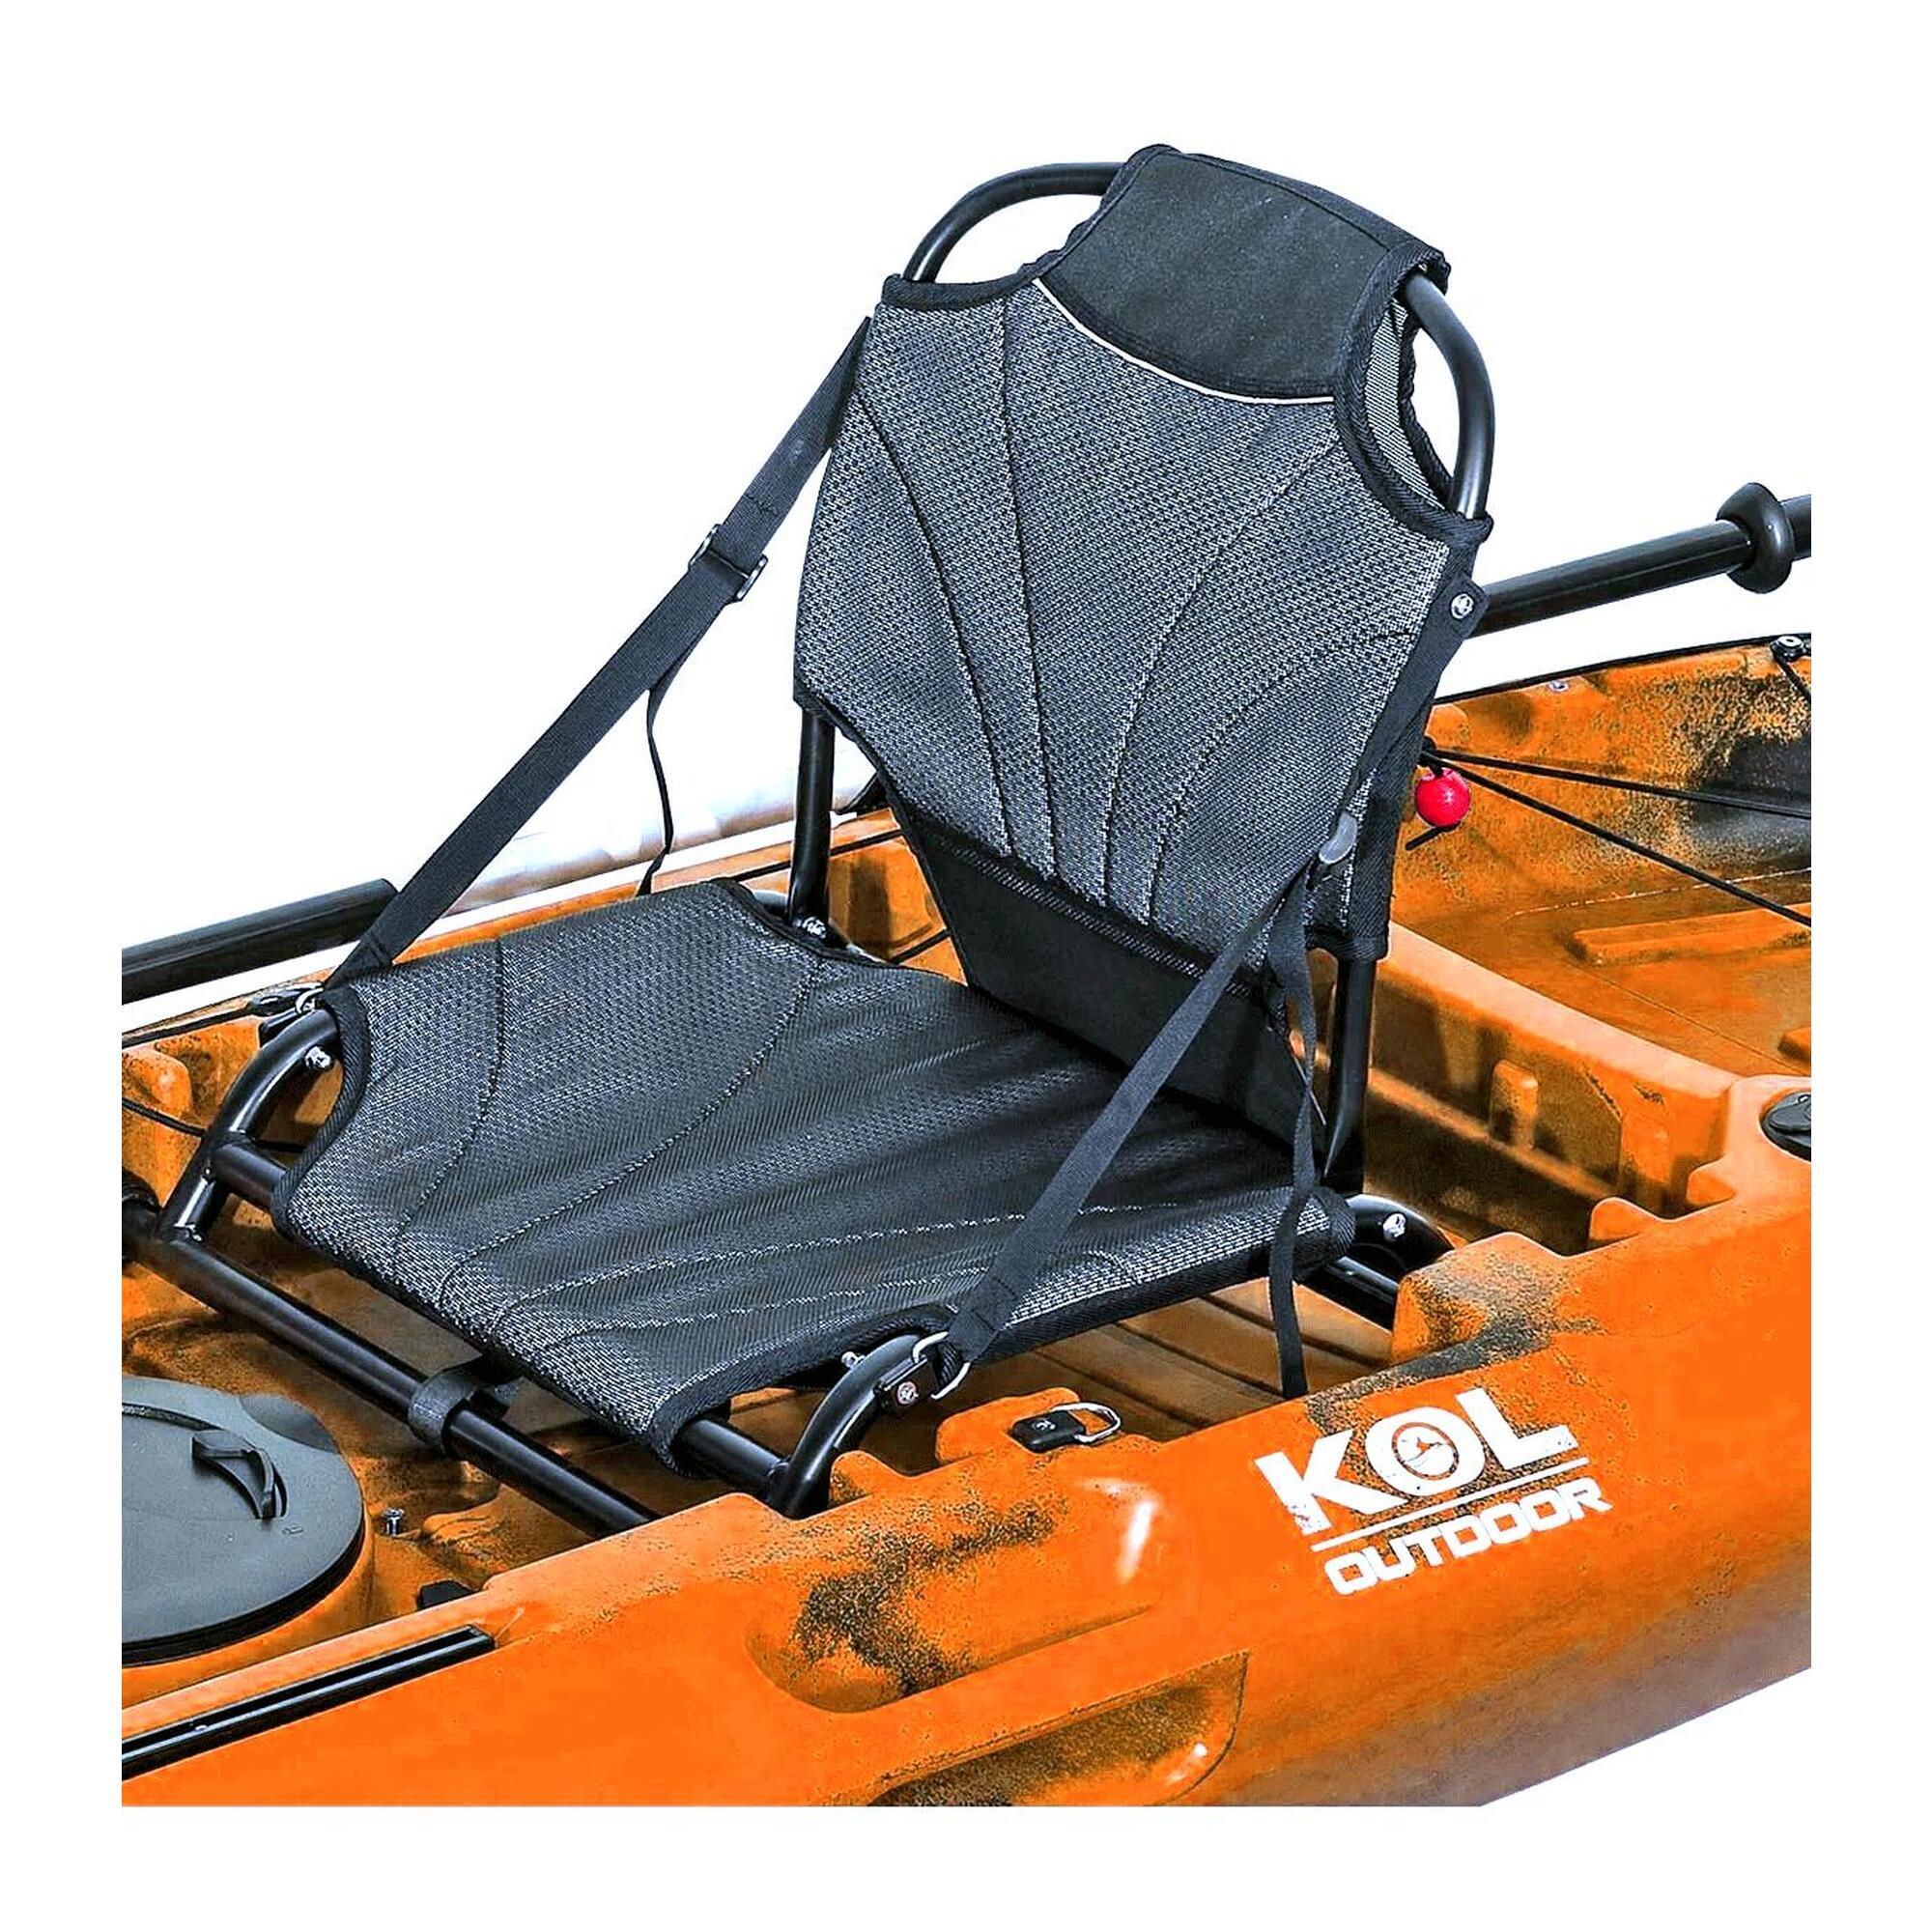 Kayak De Pesca Fury One Con Silla Aluminio Y Timón 310x85cm - Silla, Remo Y Cañero Direccional  MKP